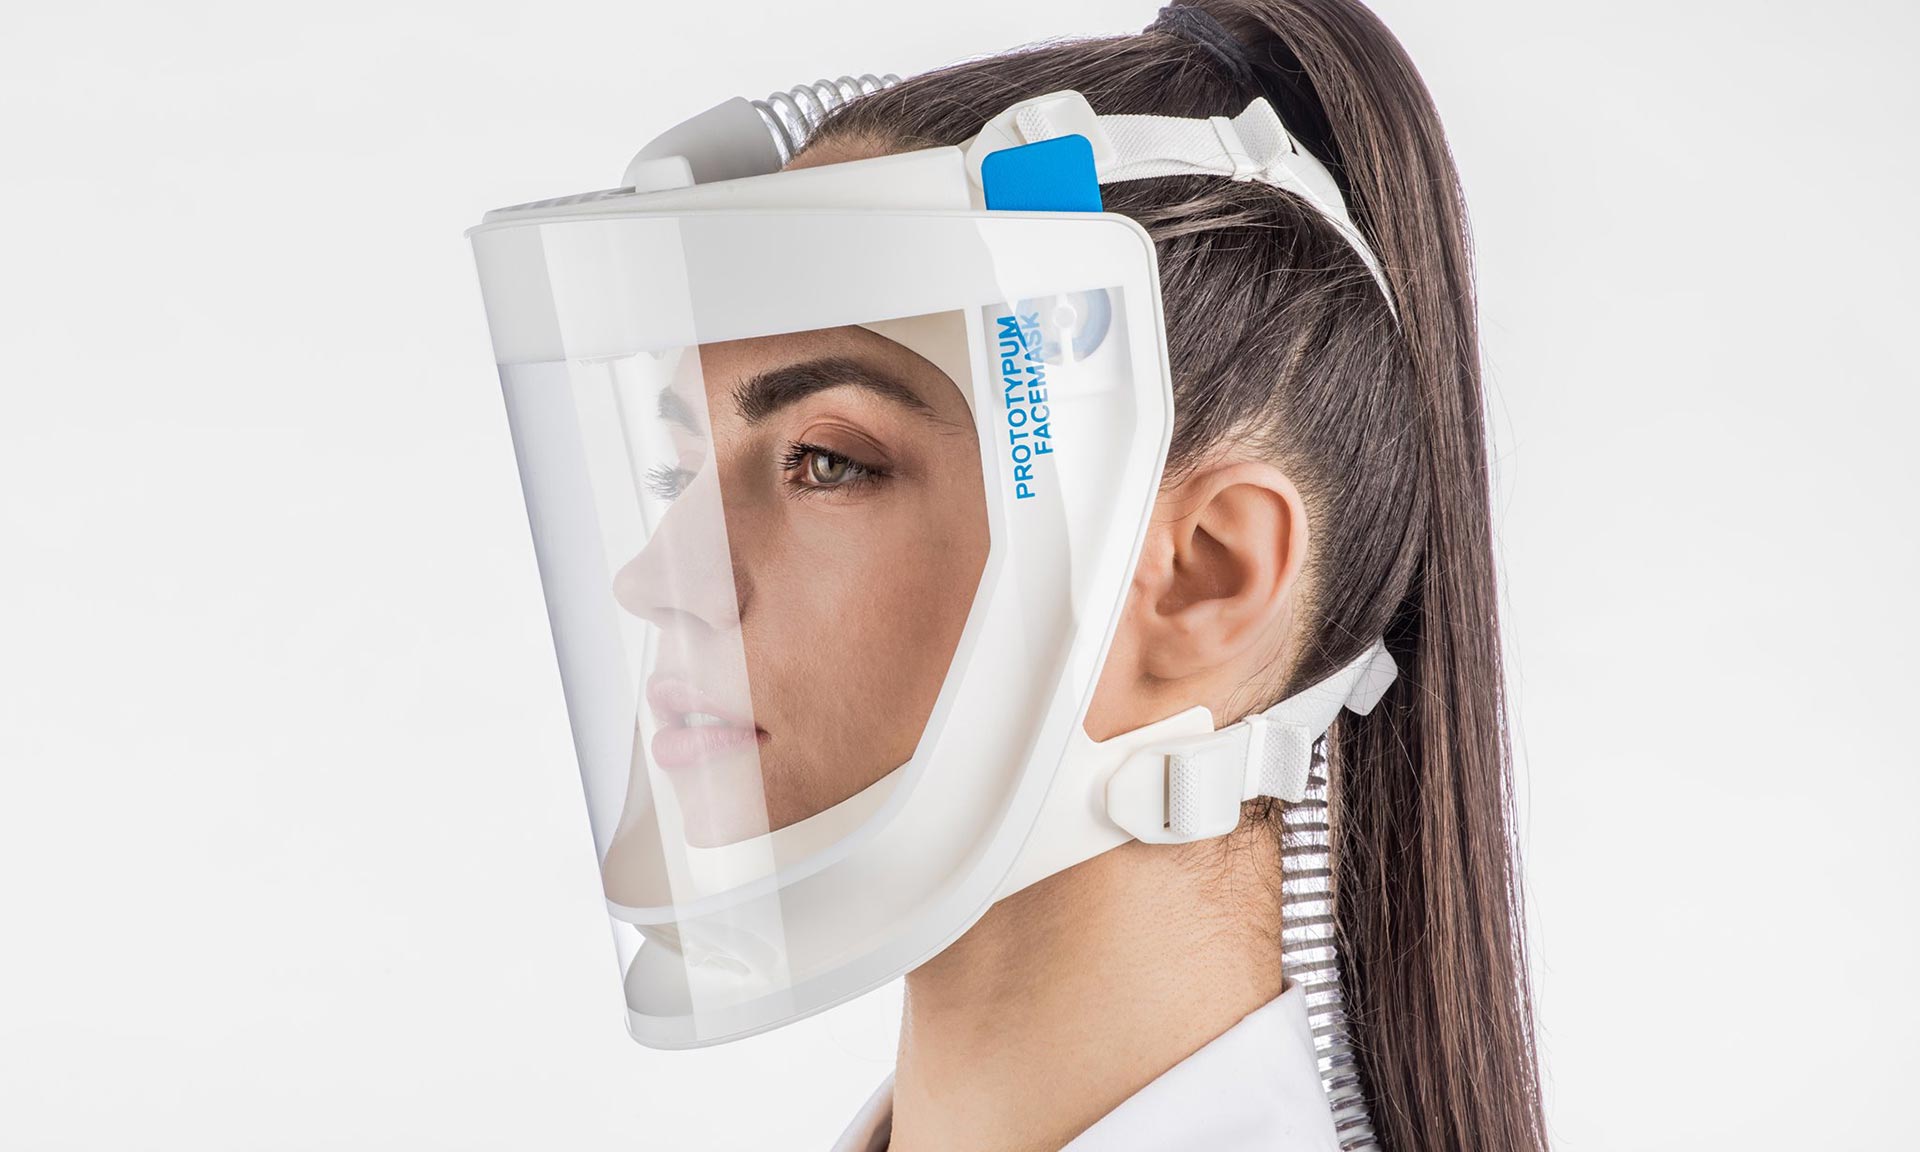 České studio Prototypum navrhlo komfortní obličejovou masku s čištěním vzduchu